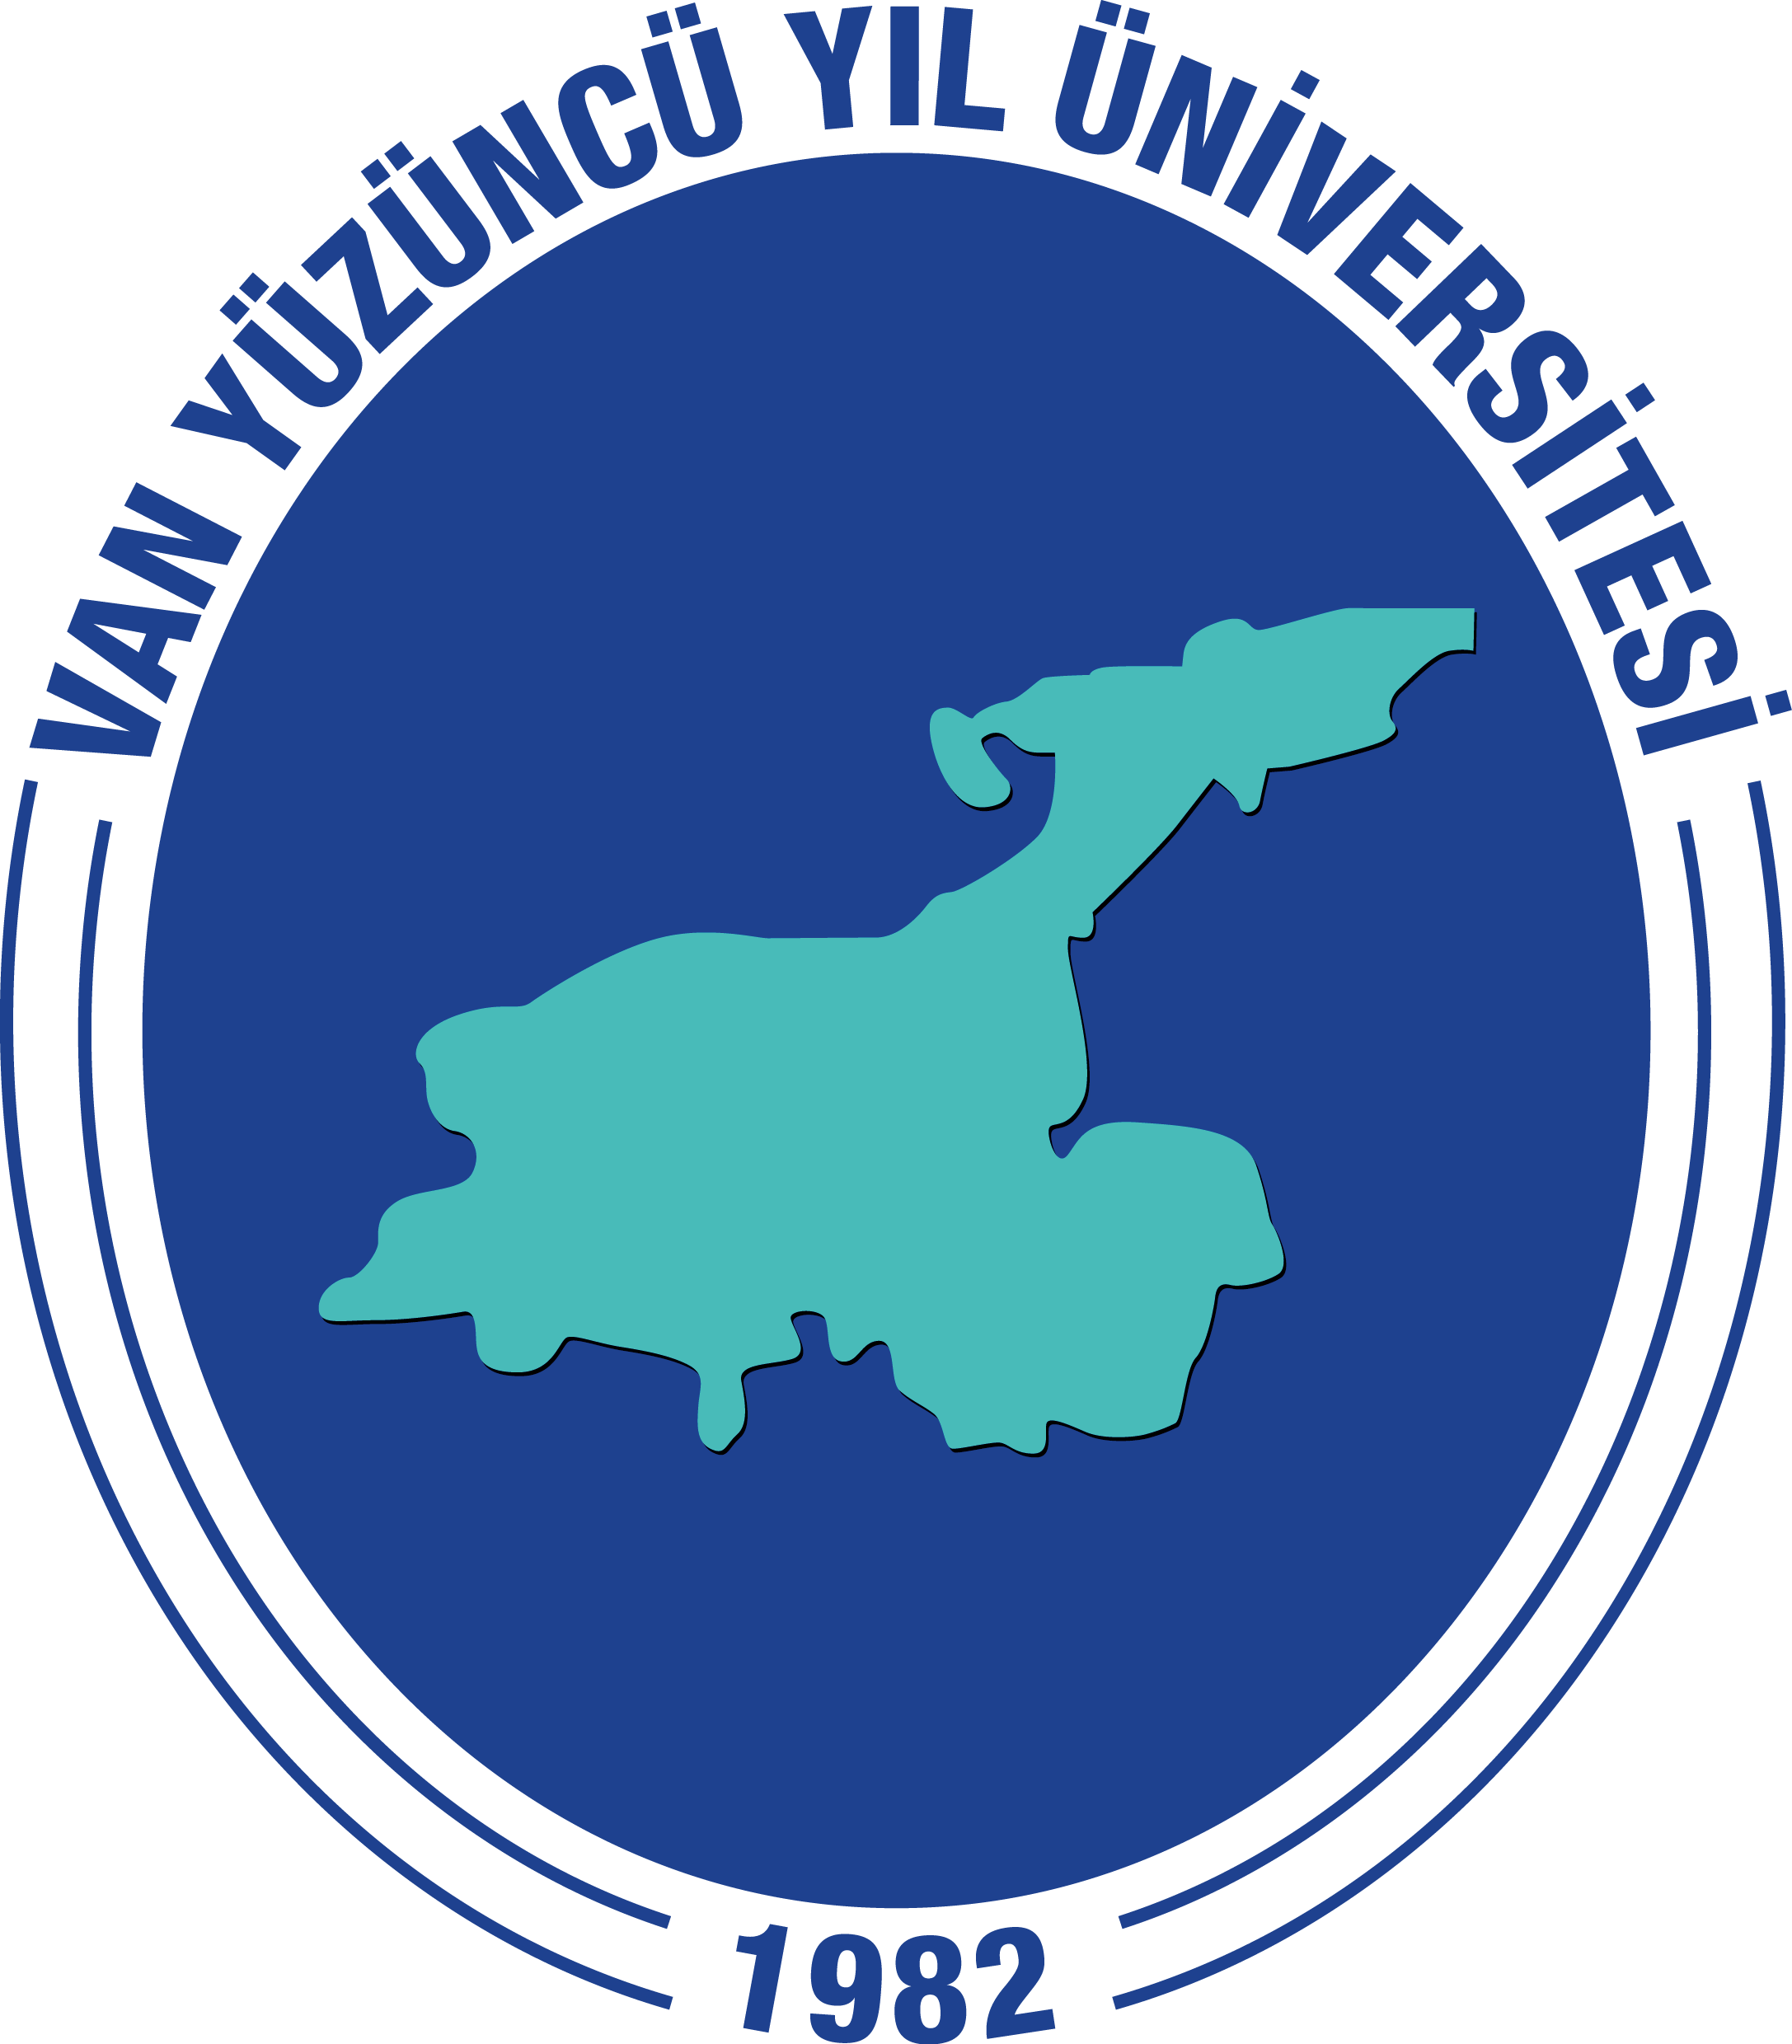 Van Yuzuncu Yil University logo